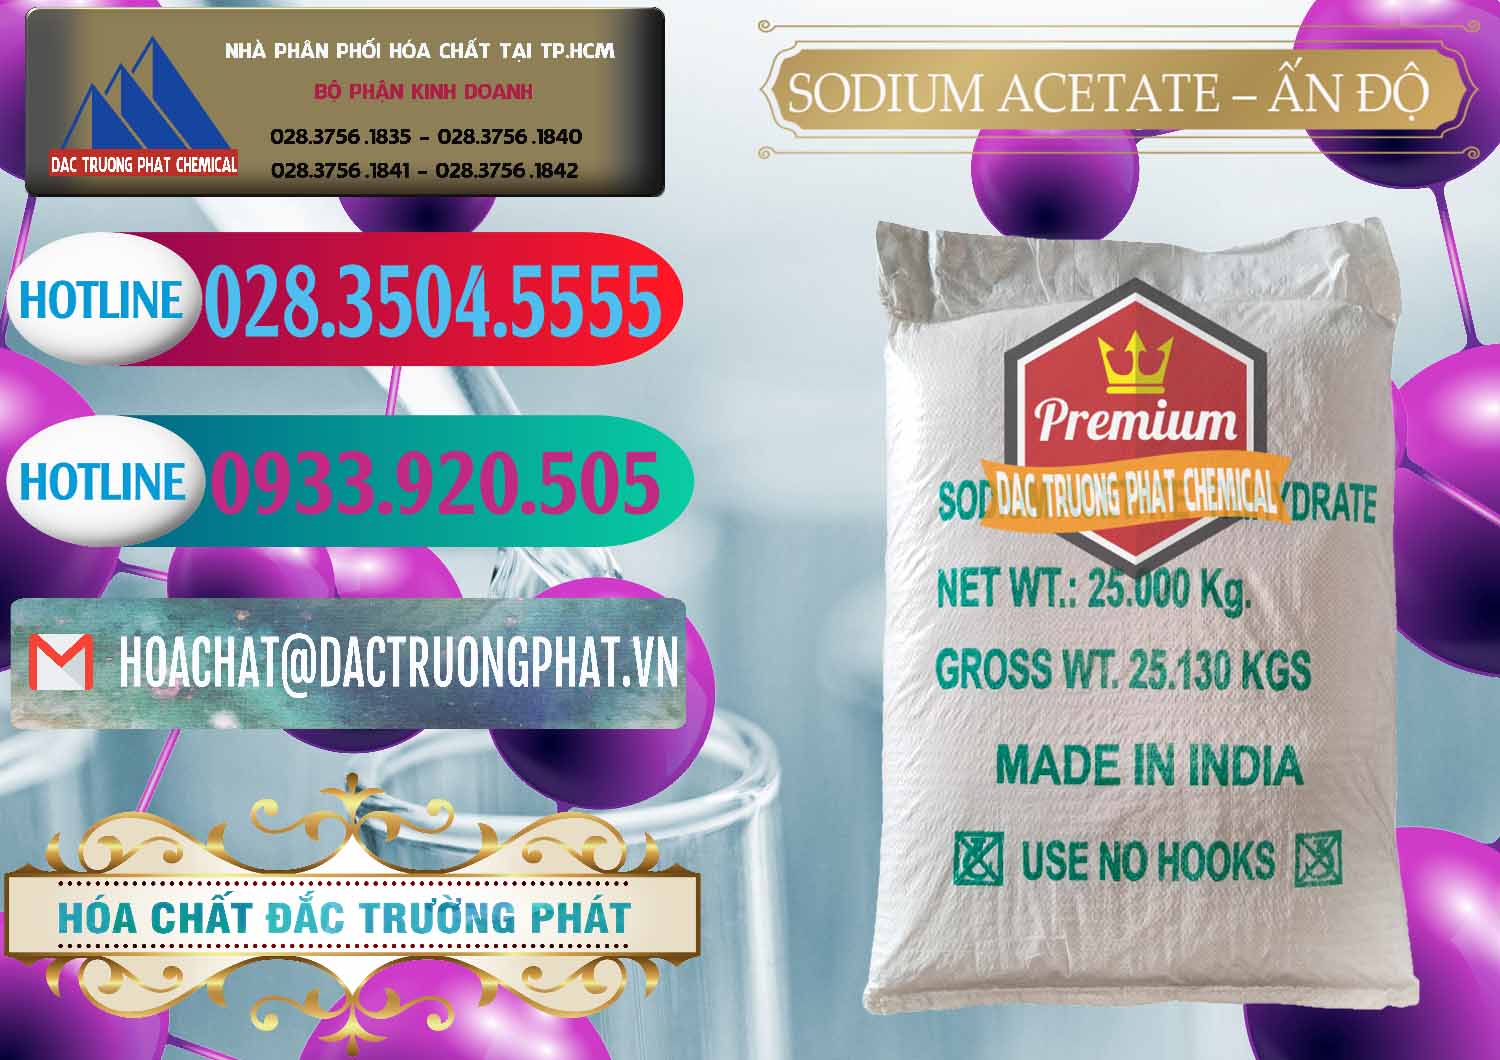 Nơi chuyên phân phối ( bán ) Sodium Acetate - Natri Acetate Ấn Độ India - 0133 - Công ty chuyên bán ( phân phối ) hóa chất tại TP.HCM - truongphat.vn